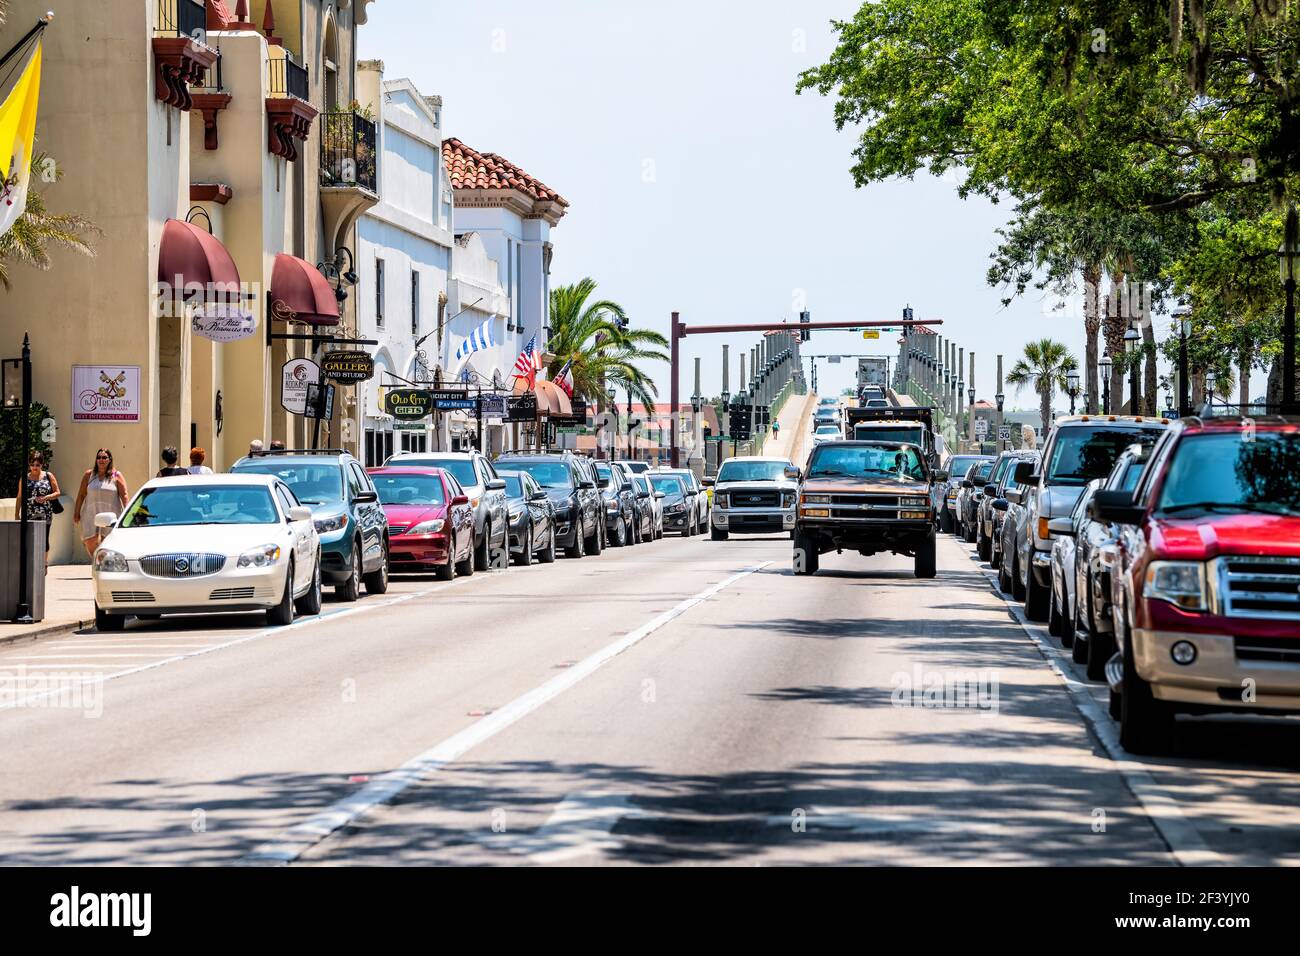 St. Augustine, USA - 10. Mai 2018: Menschen einkaufen auf Florida City Cathedral Place Straße Bürgersteig von Restaurants, Cafés Geschäfte von b Stockfoto